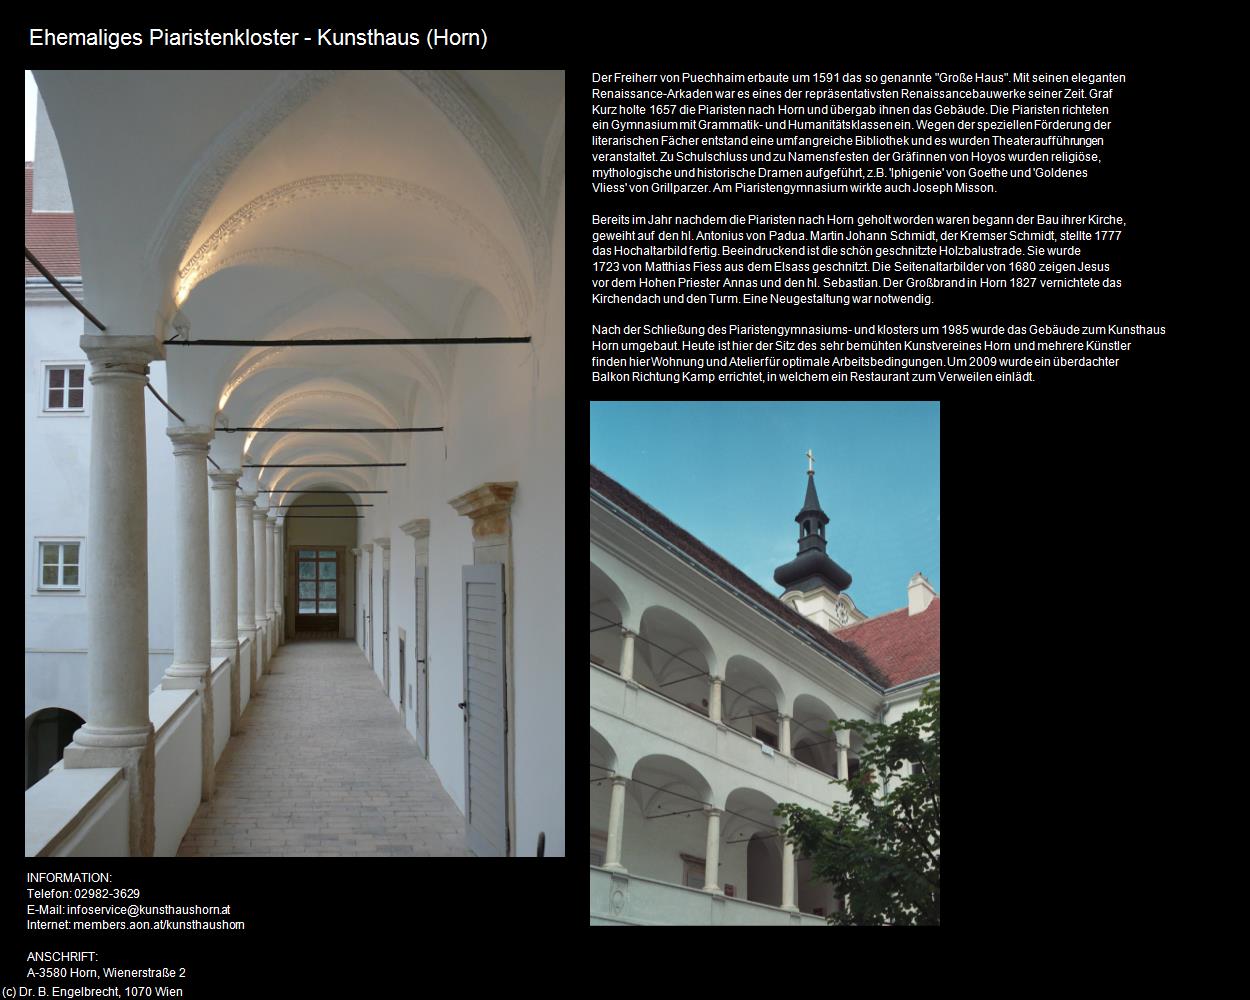 Ehem. Piaristenkloster - Kunsthaus (Horn) in Kulturatlas-NIEDERÖSTERREICH